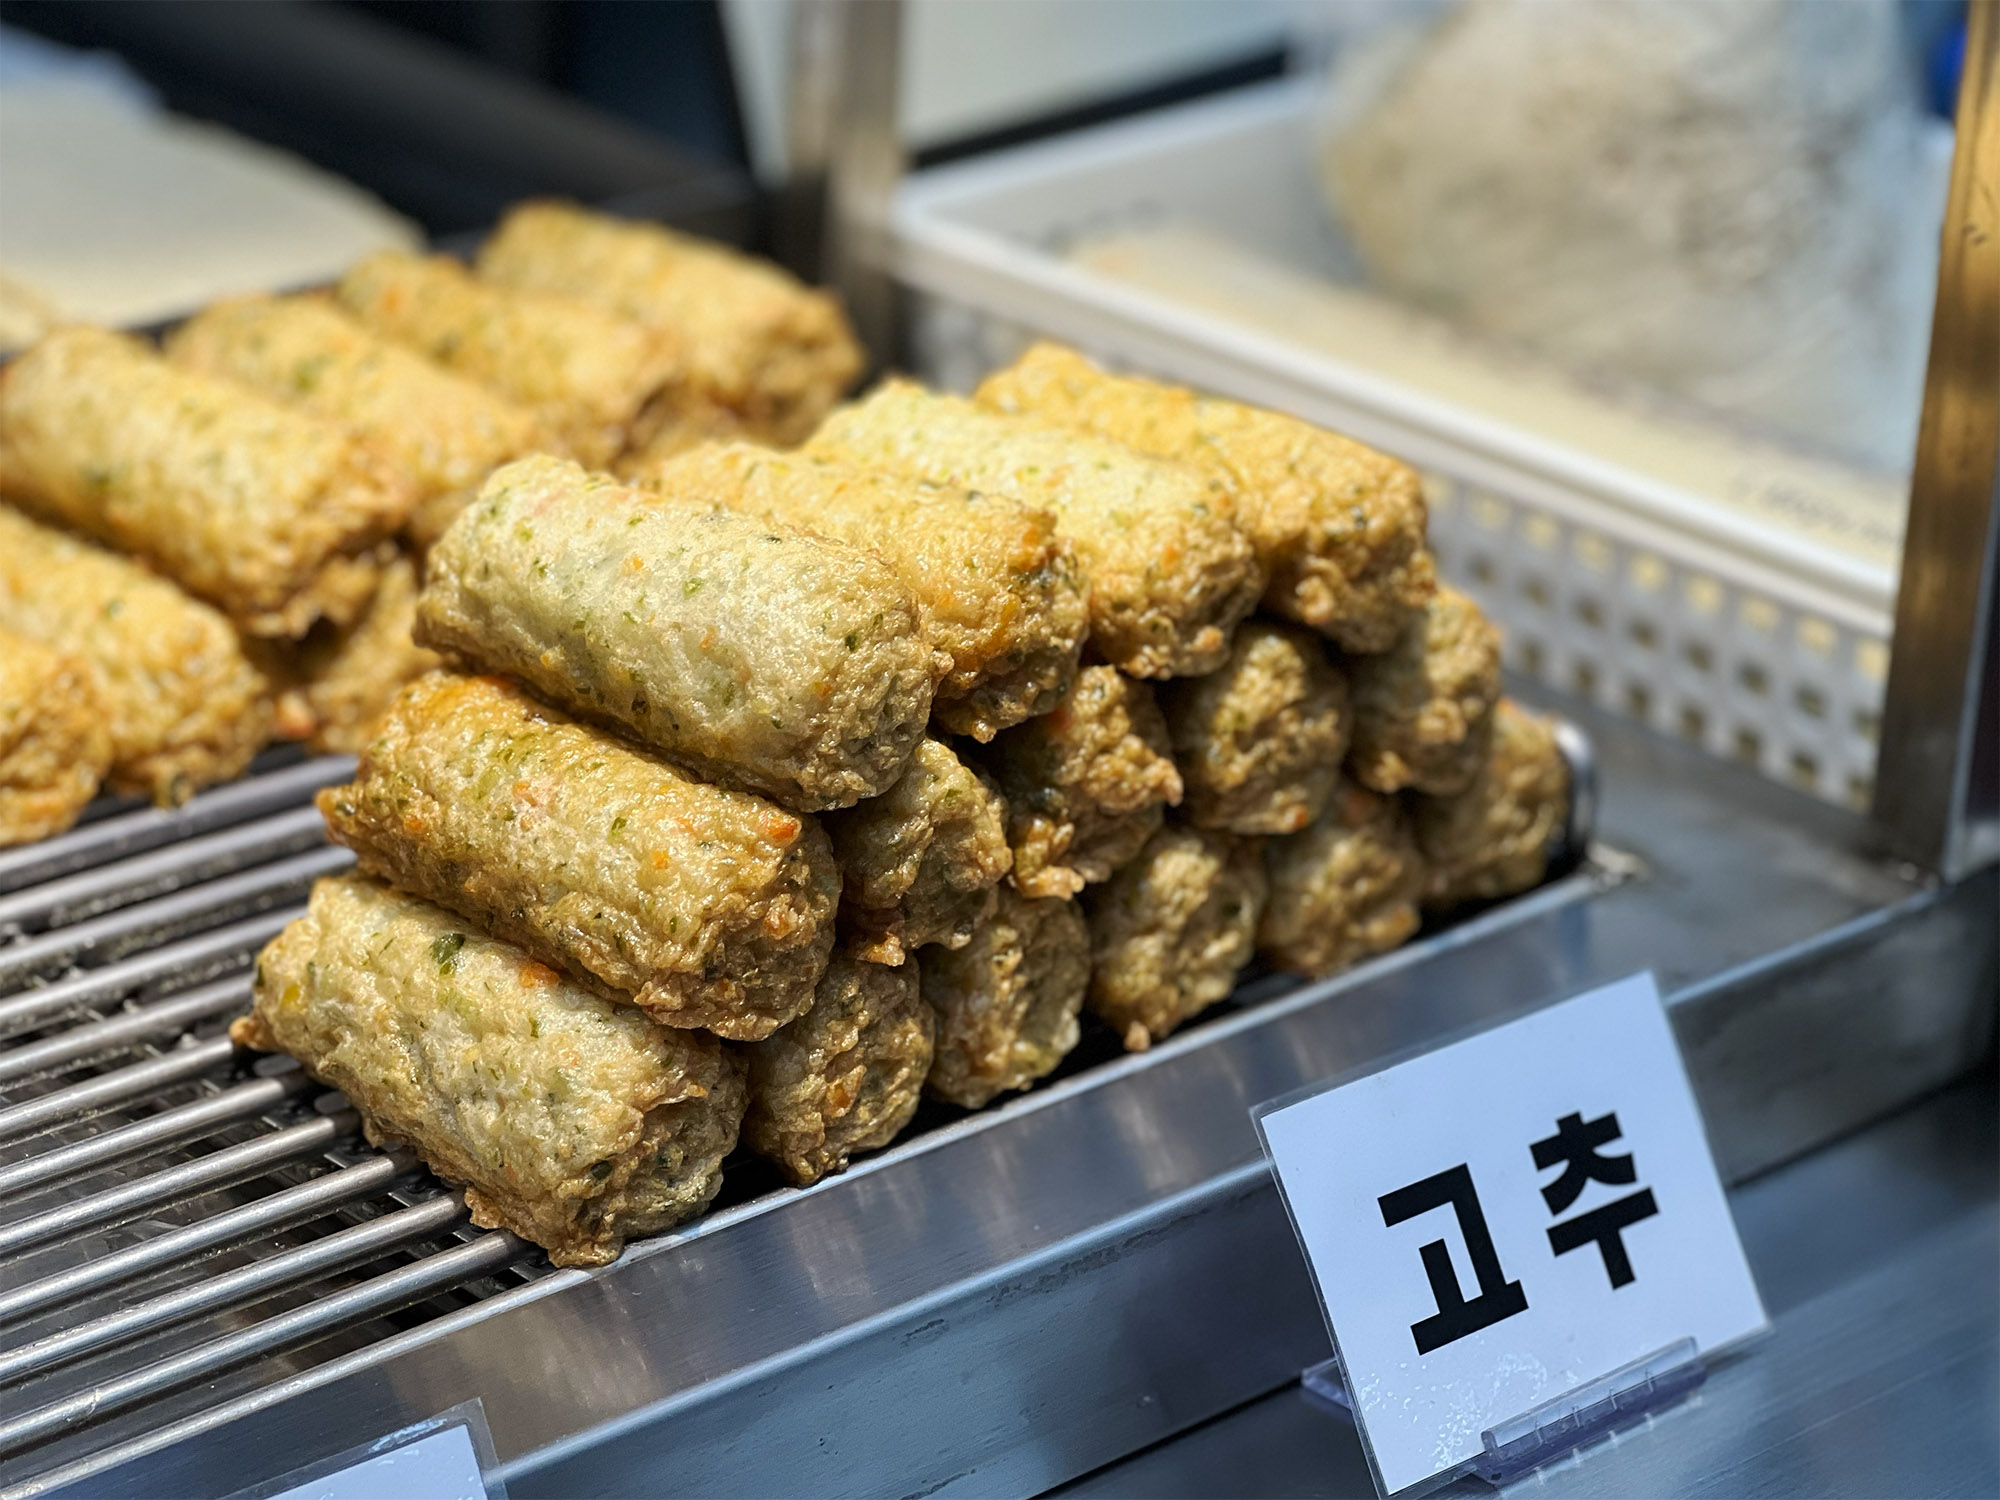 Korean Fishcake (Eomuk) at Masan Fish Market